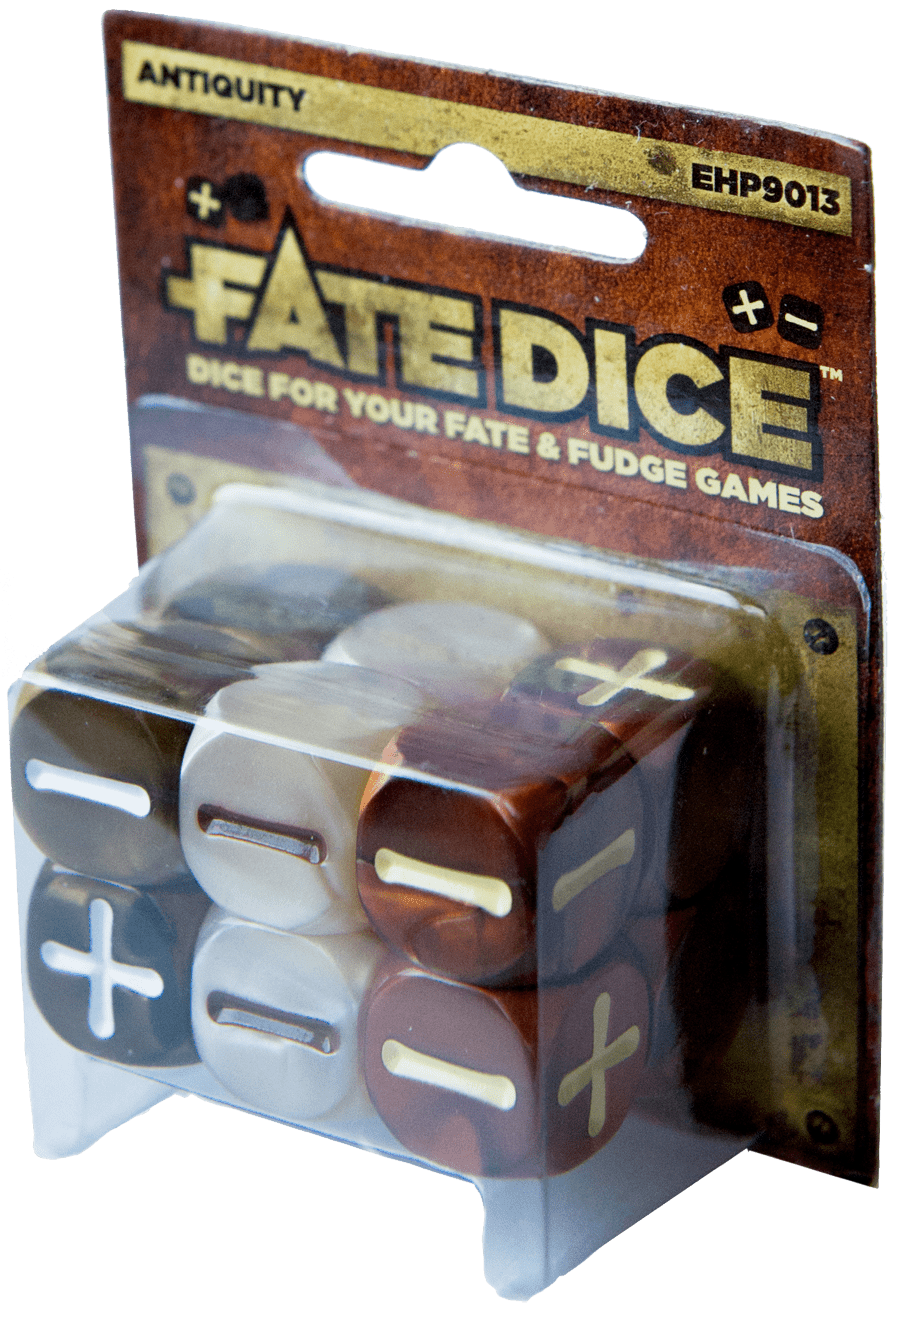 Fate Dice: Antiquity - Gamescape